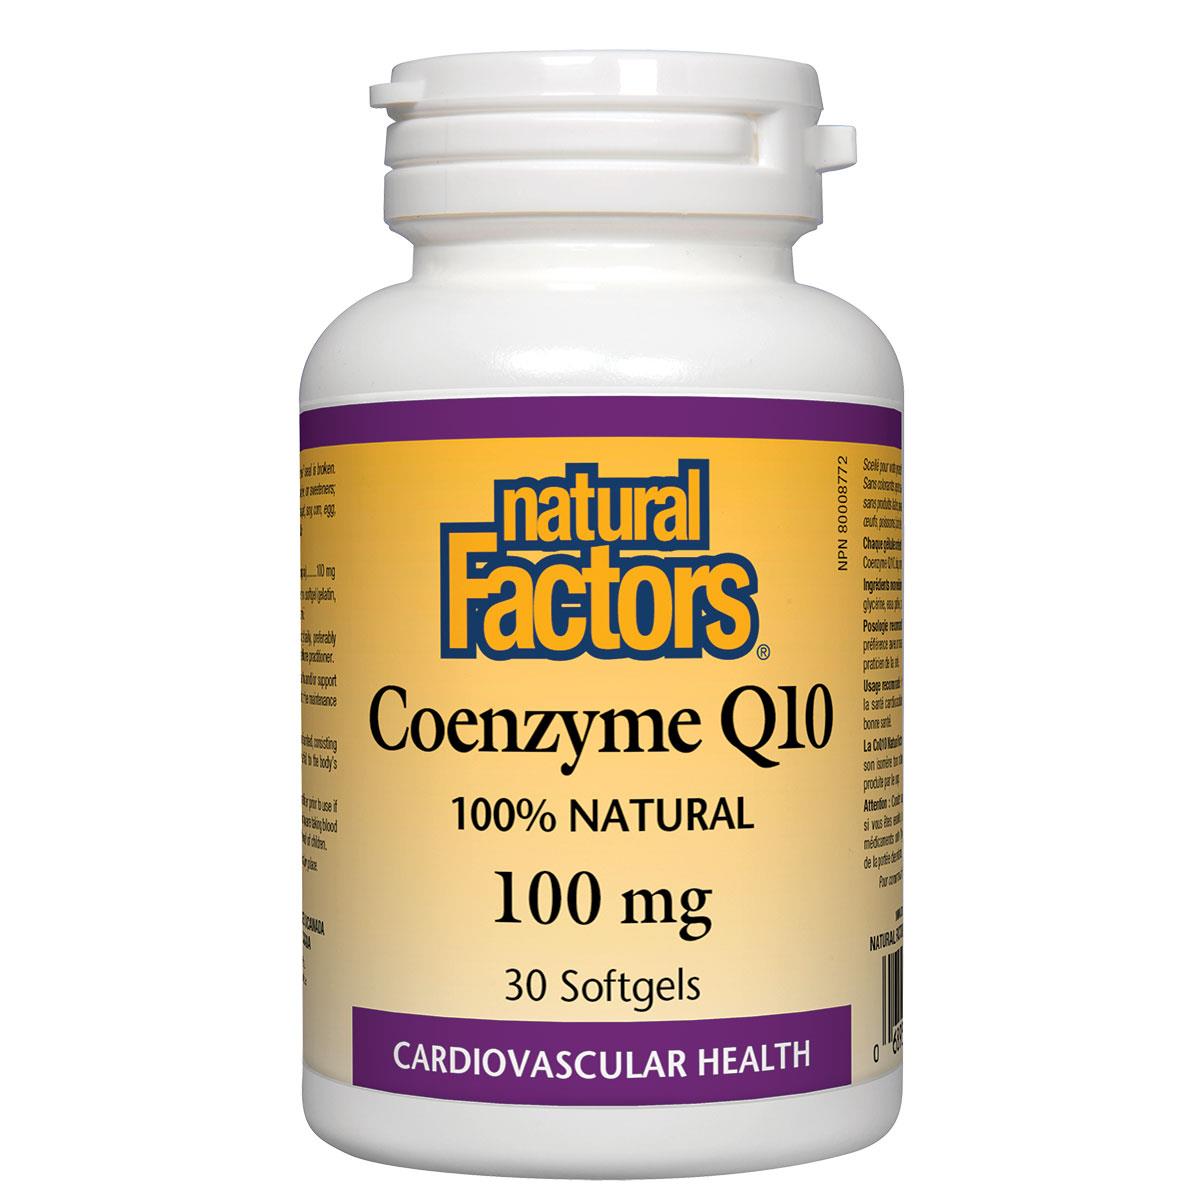 Natural Factors Coenzyme Q10 (100% Natural) 100mg / 30SGels